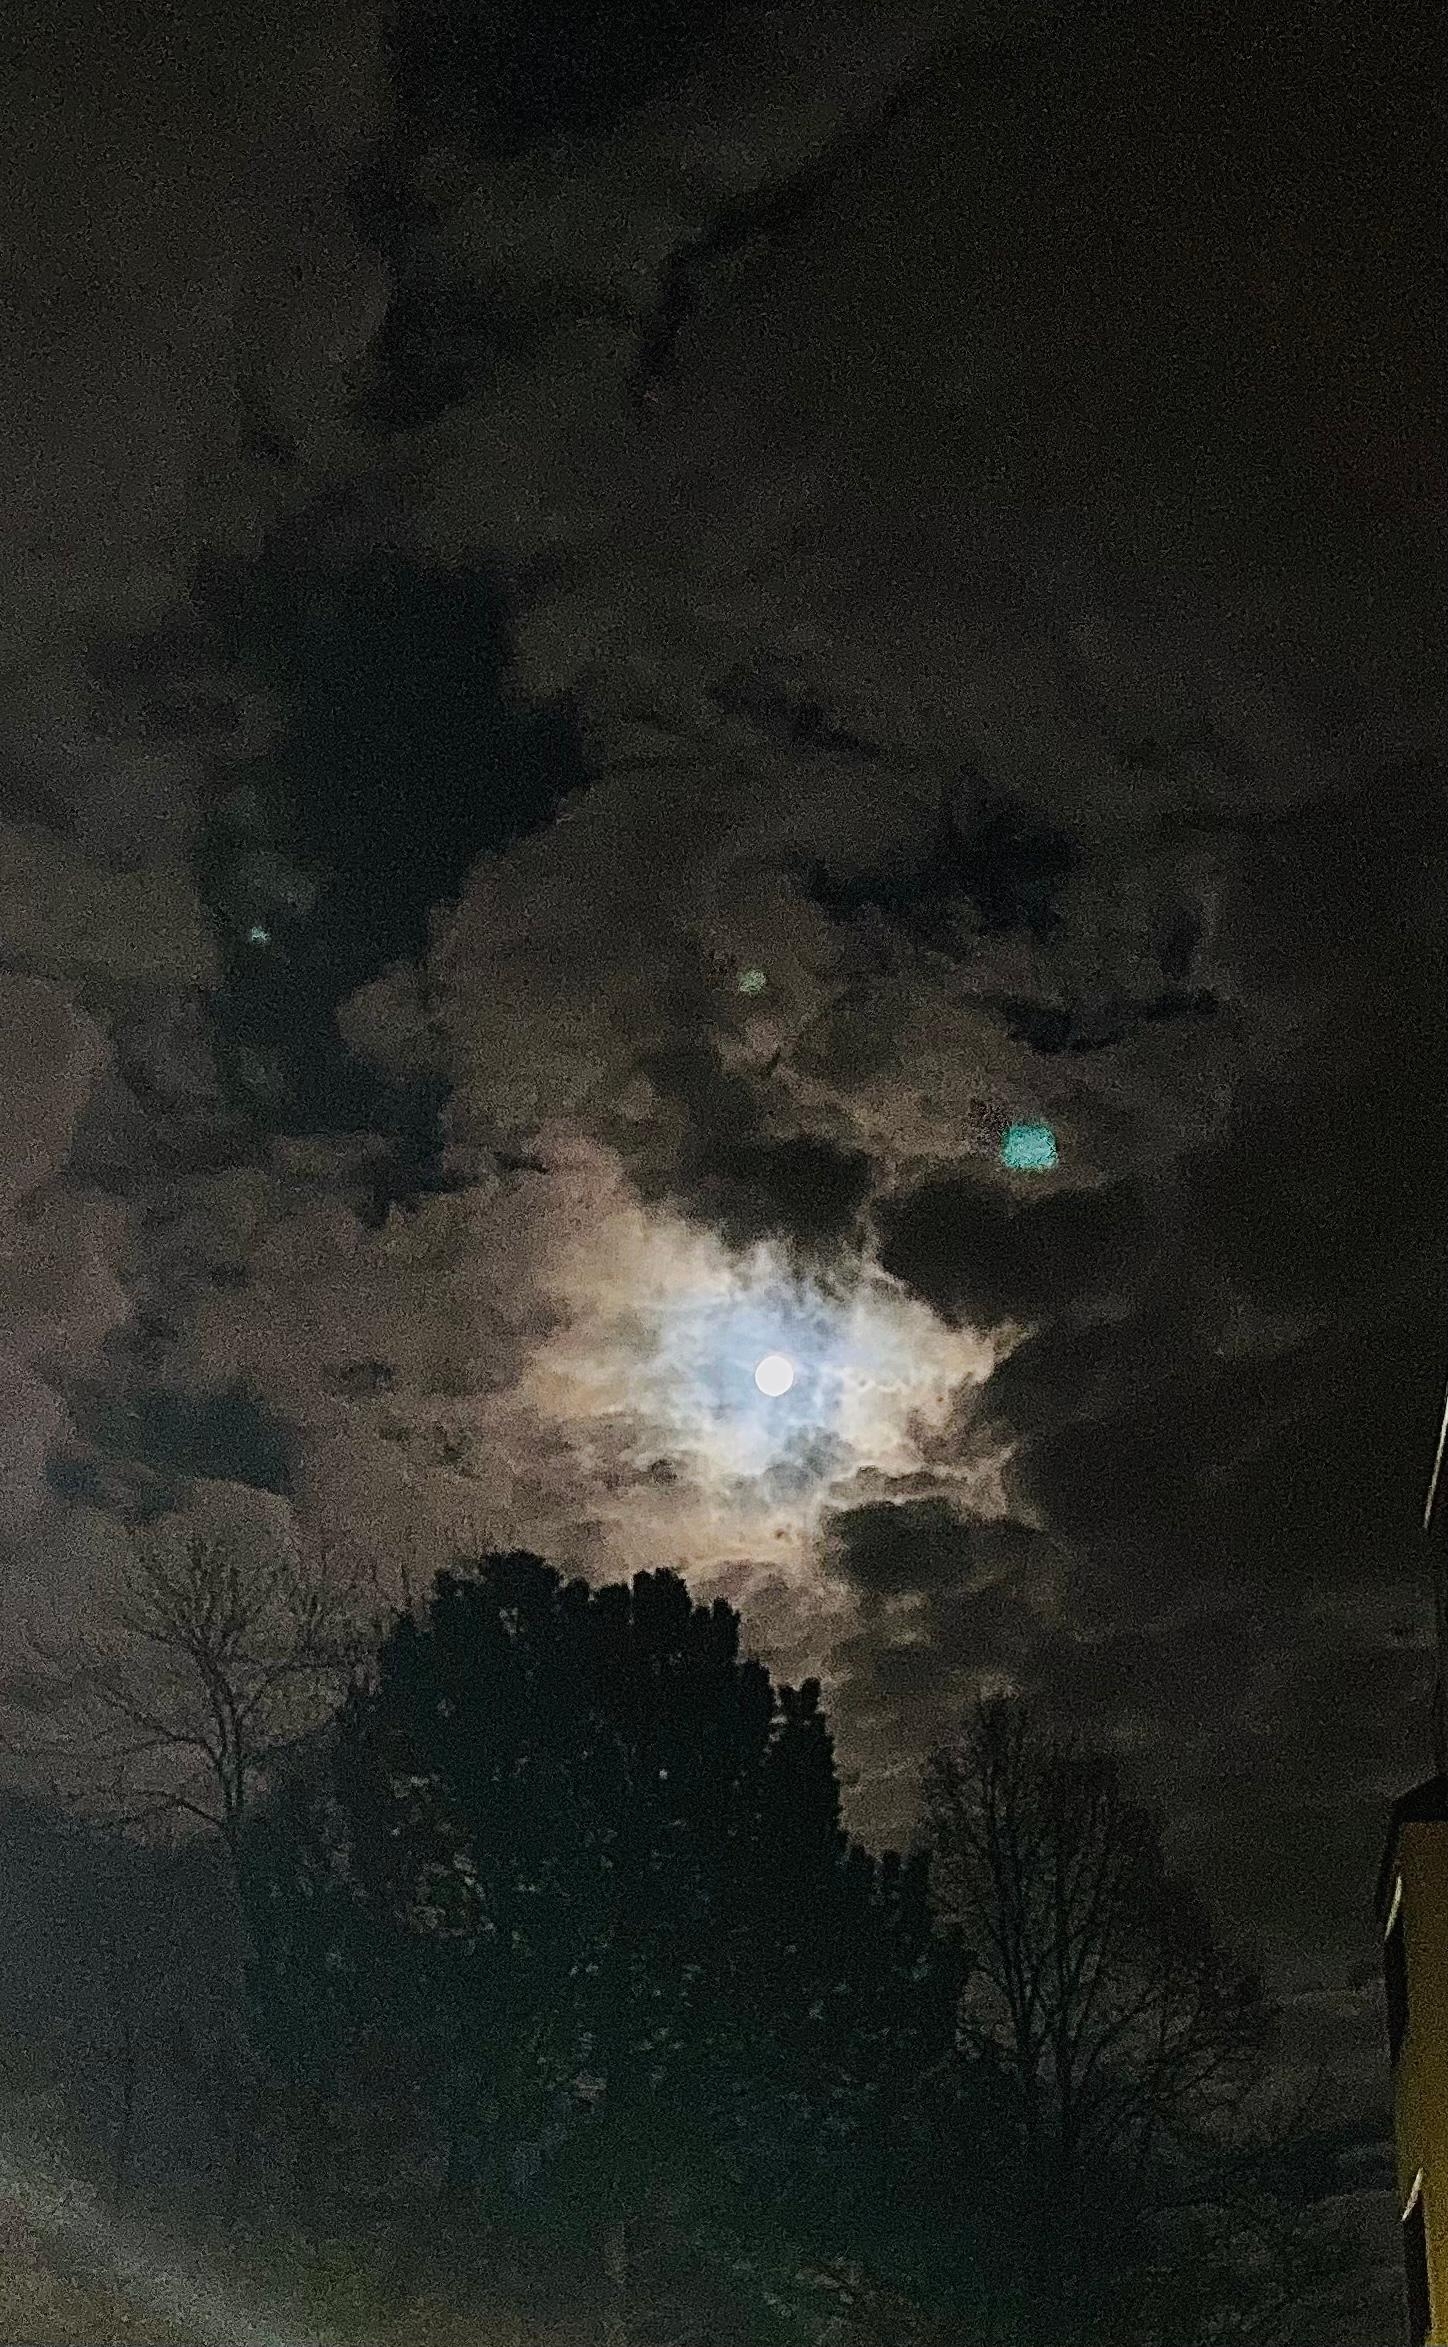 Vollmond 🌕 
Ein sehr schöner Abend! 
#moon #night #today